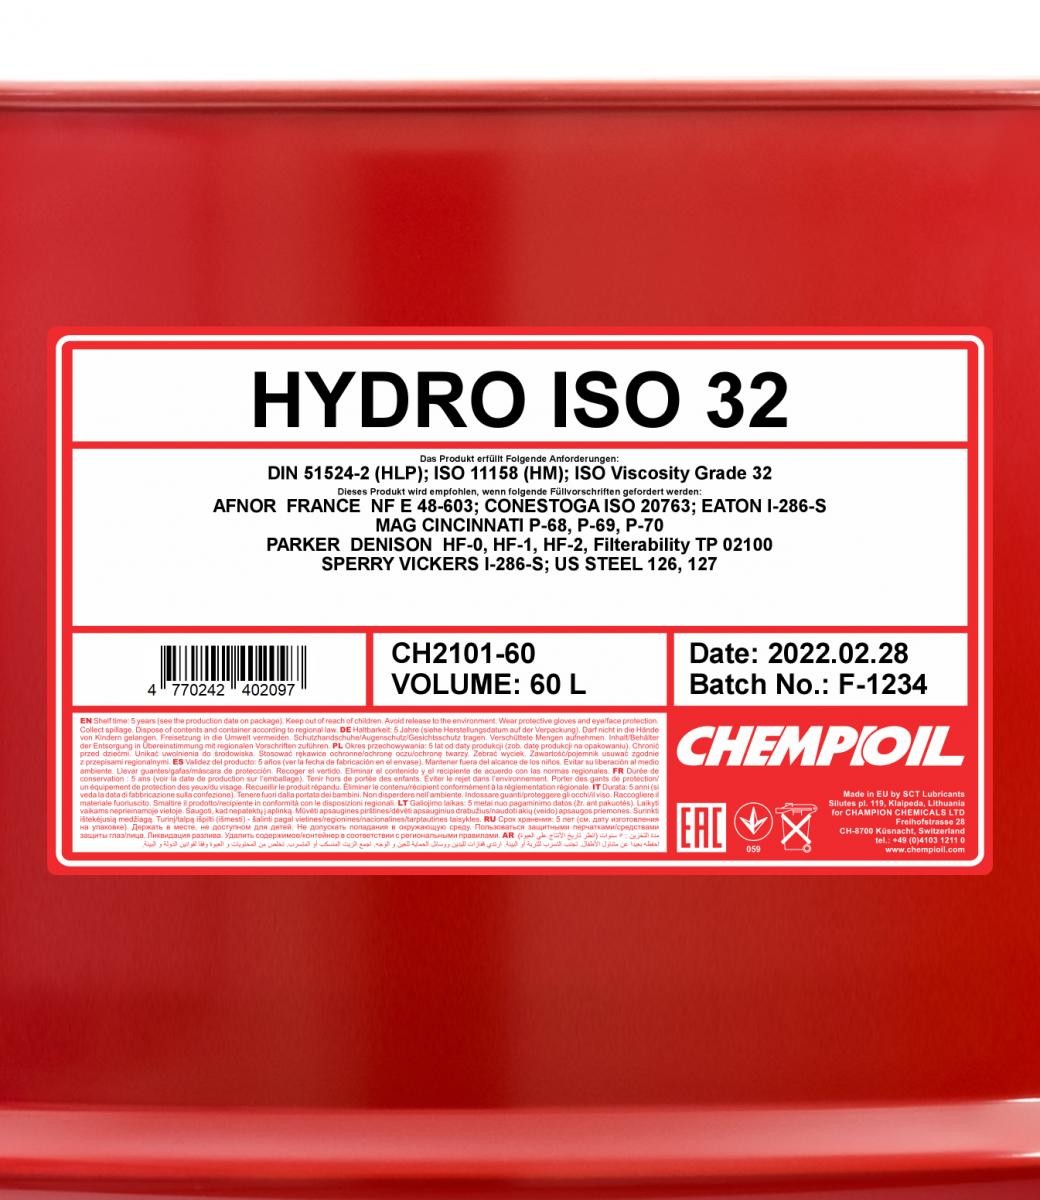 CHEMPIOIL Hydraulic fluid CH2101-60